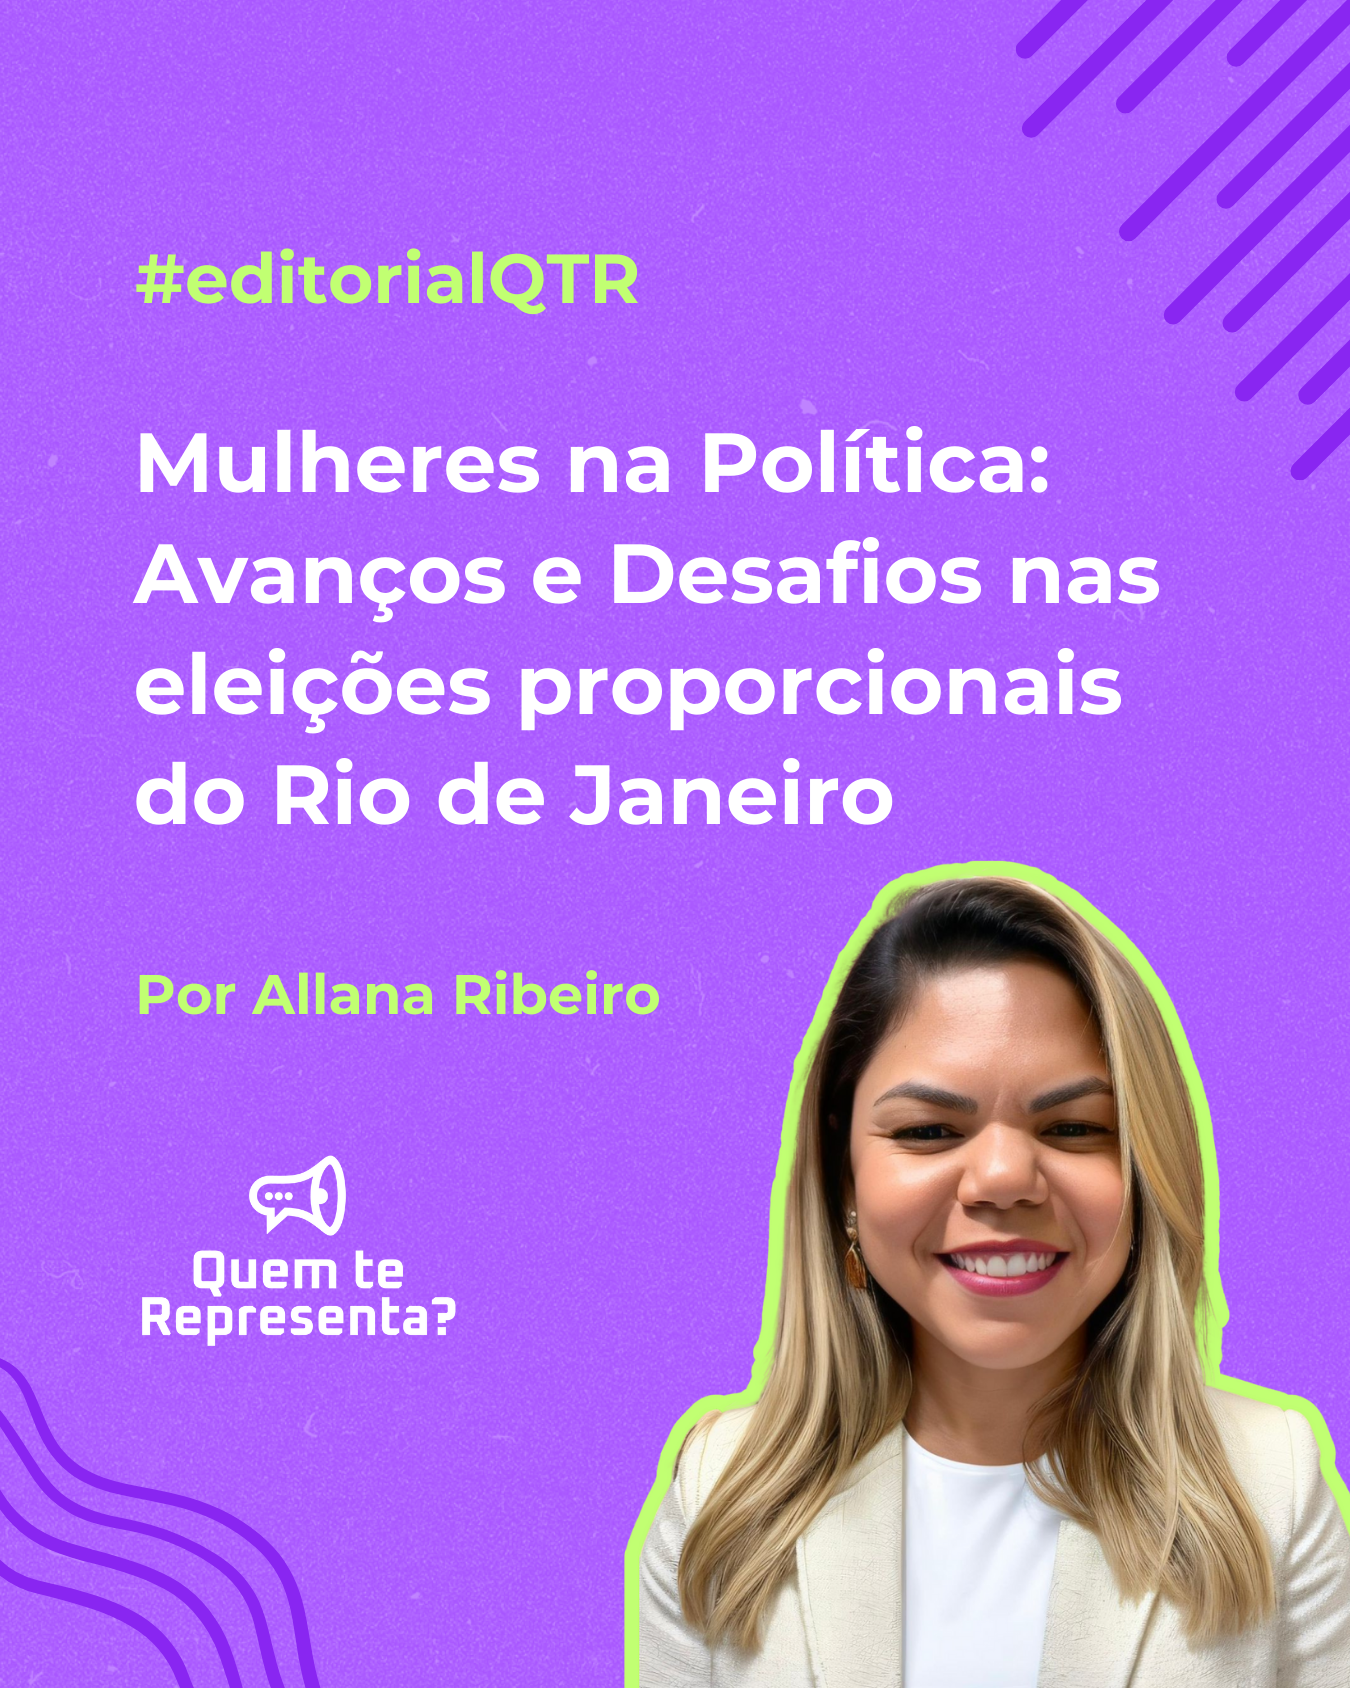 Mulheres na Política: Avanços e Desafios nas eleições proporcionais do Rio de Janeiro